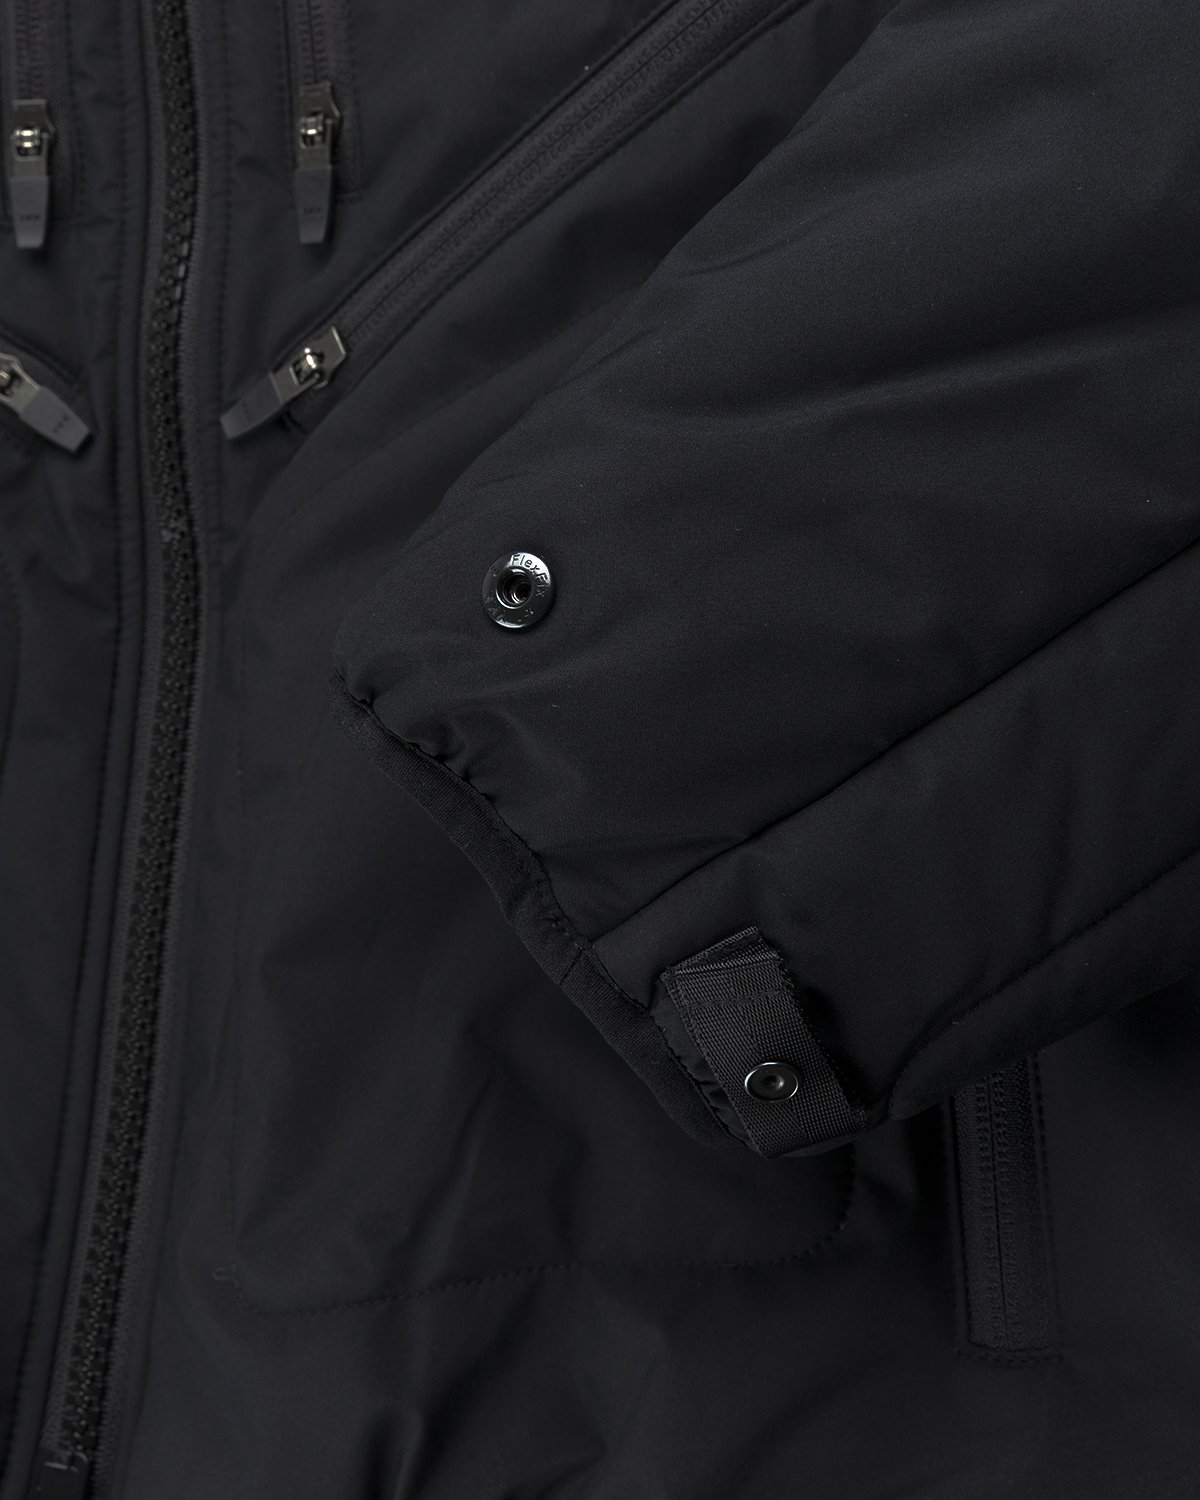 ACRONYM - J91-WS Jacket Black - Clothing - Black - Image 5